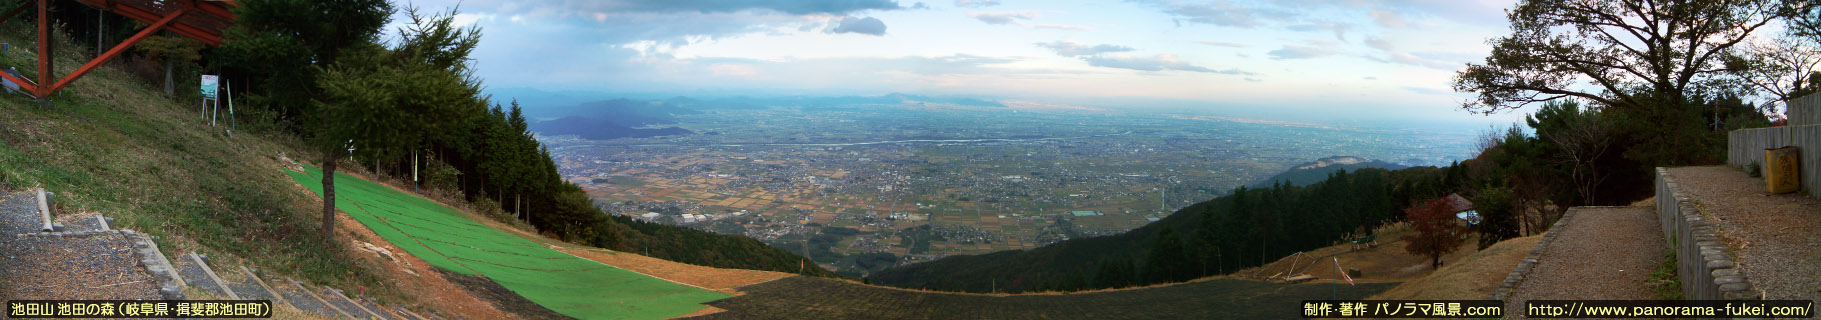 池田山 池田の森から望む濃尾平野のパノラマ風景写真